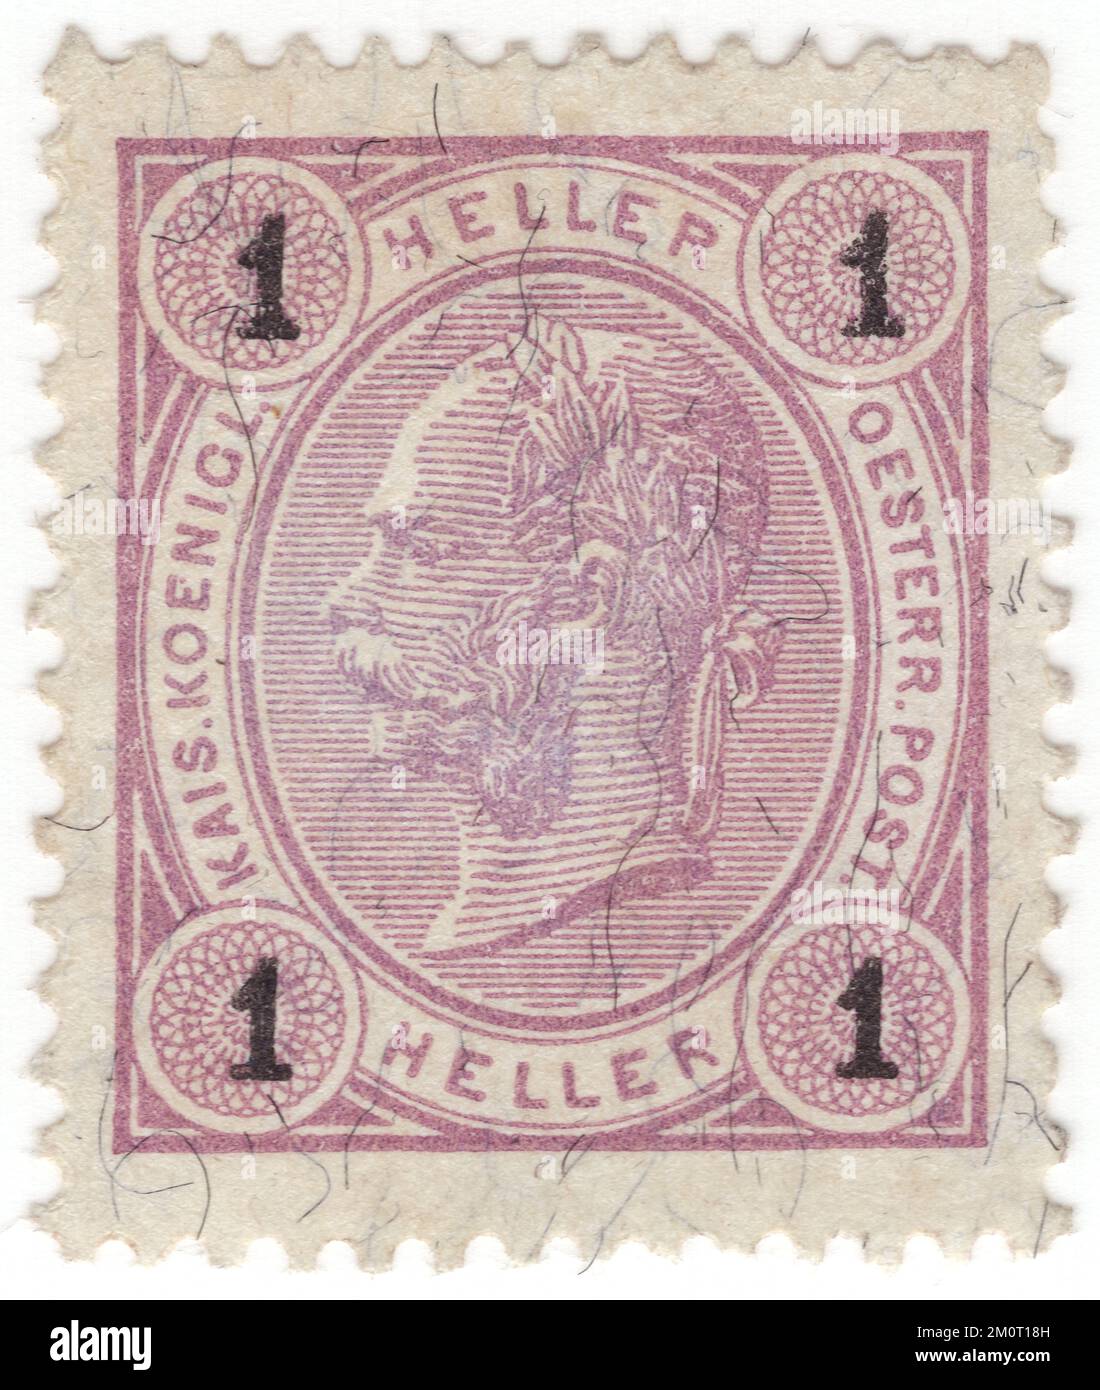 AUTRICHE — 1899: Un timbre-poste de 1 lilas pâle de heller représentant le portrait en relief du jeune empereur monarque autrichien Franz Josef. Franz Joseph I ou François Joseph I fut empereur d'Autriche, roi de Hongrie, et les autres États de la monarchie des Habsbourg du 2 décembre 1848 jusqu'à sa mort le 21 novembre 1916. Au début de son règne, ses royaumes et ses territoires ont été désignés comme l'Empire autrichien, mais ont été reconstitués comme la double monarchie de l'Empire austro-hongrois en 1867. Du 1 mai 1850 au 24 août 1866, Franz Joseph a également été président de la Confédération allemande Banque D'Images